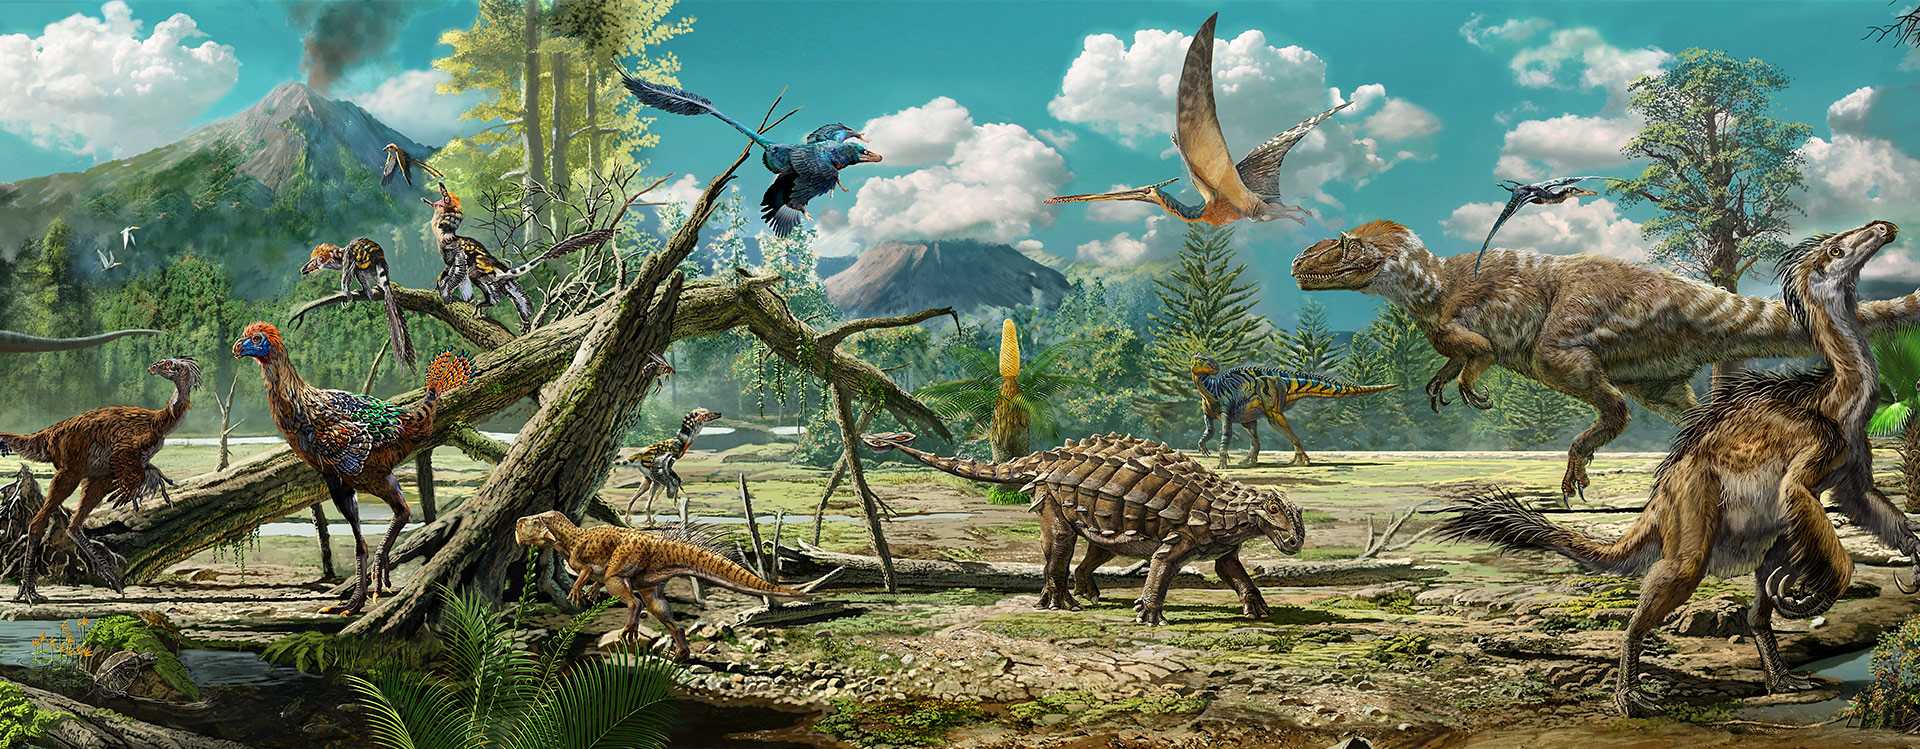 Разнообразие китайских динозавров начало снижаться задолго до падения астероида